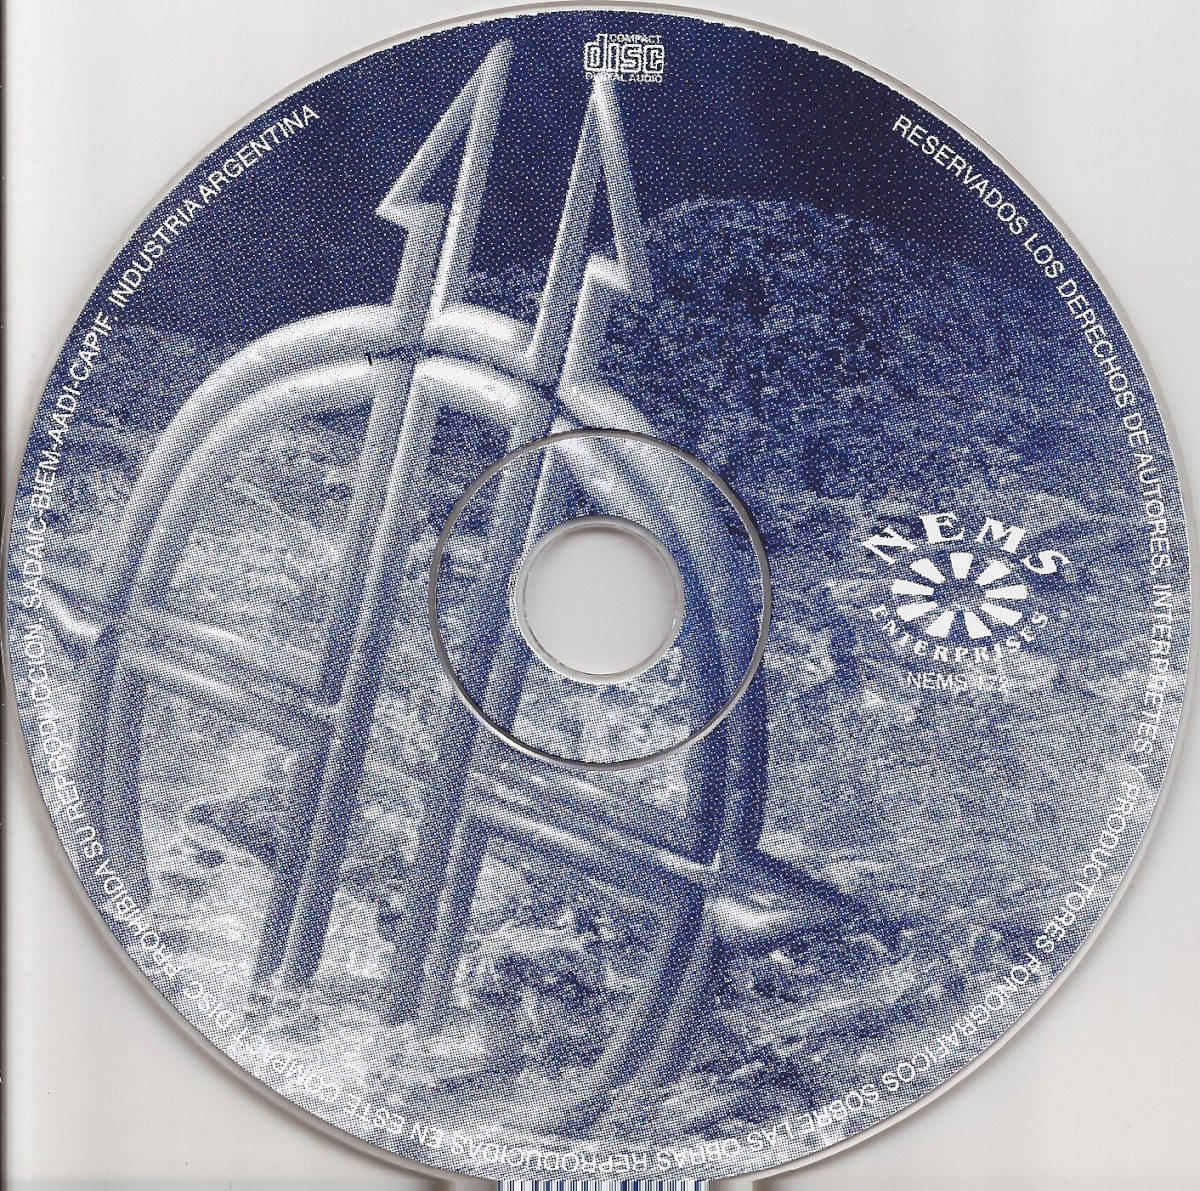 Release “Ecliptica” by Sonata Arctica - Cover art - MusicBrainz